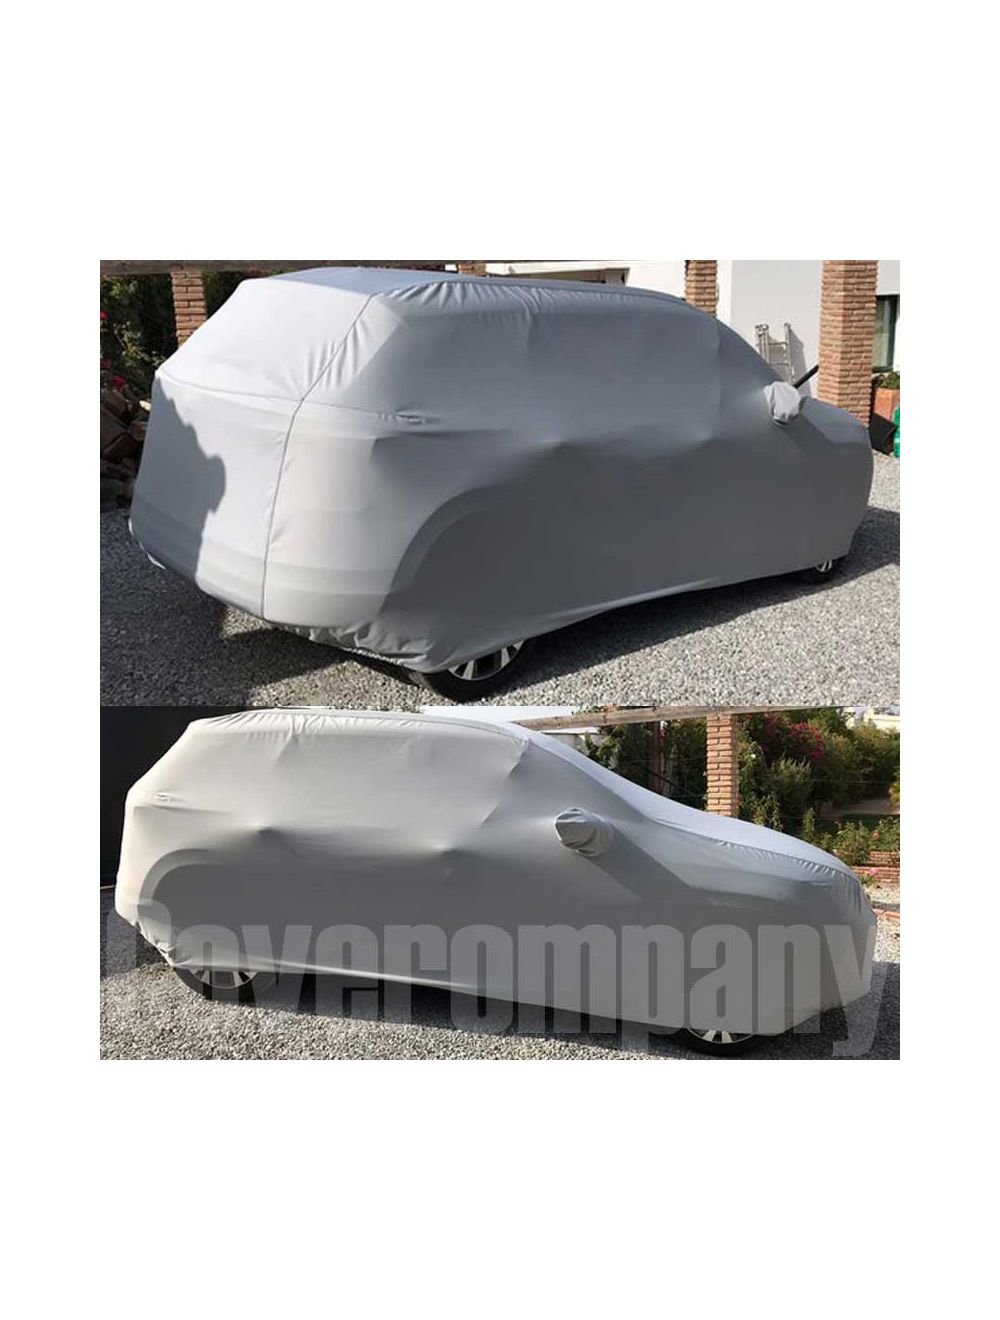 Custom Rainproof Volkswagen Car Cover: Outdoor Platinum Range